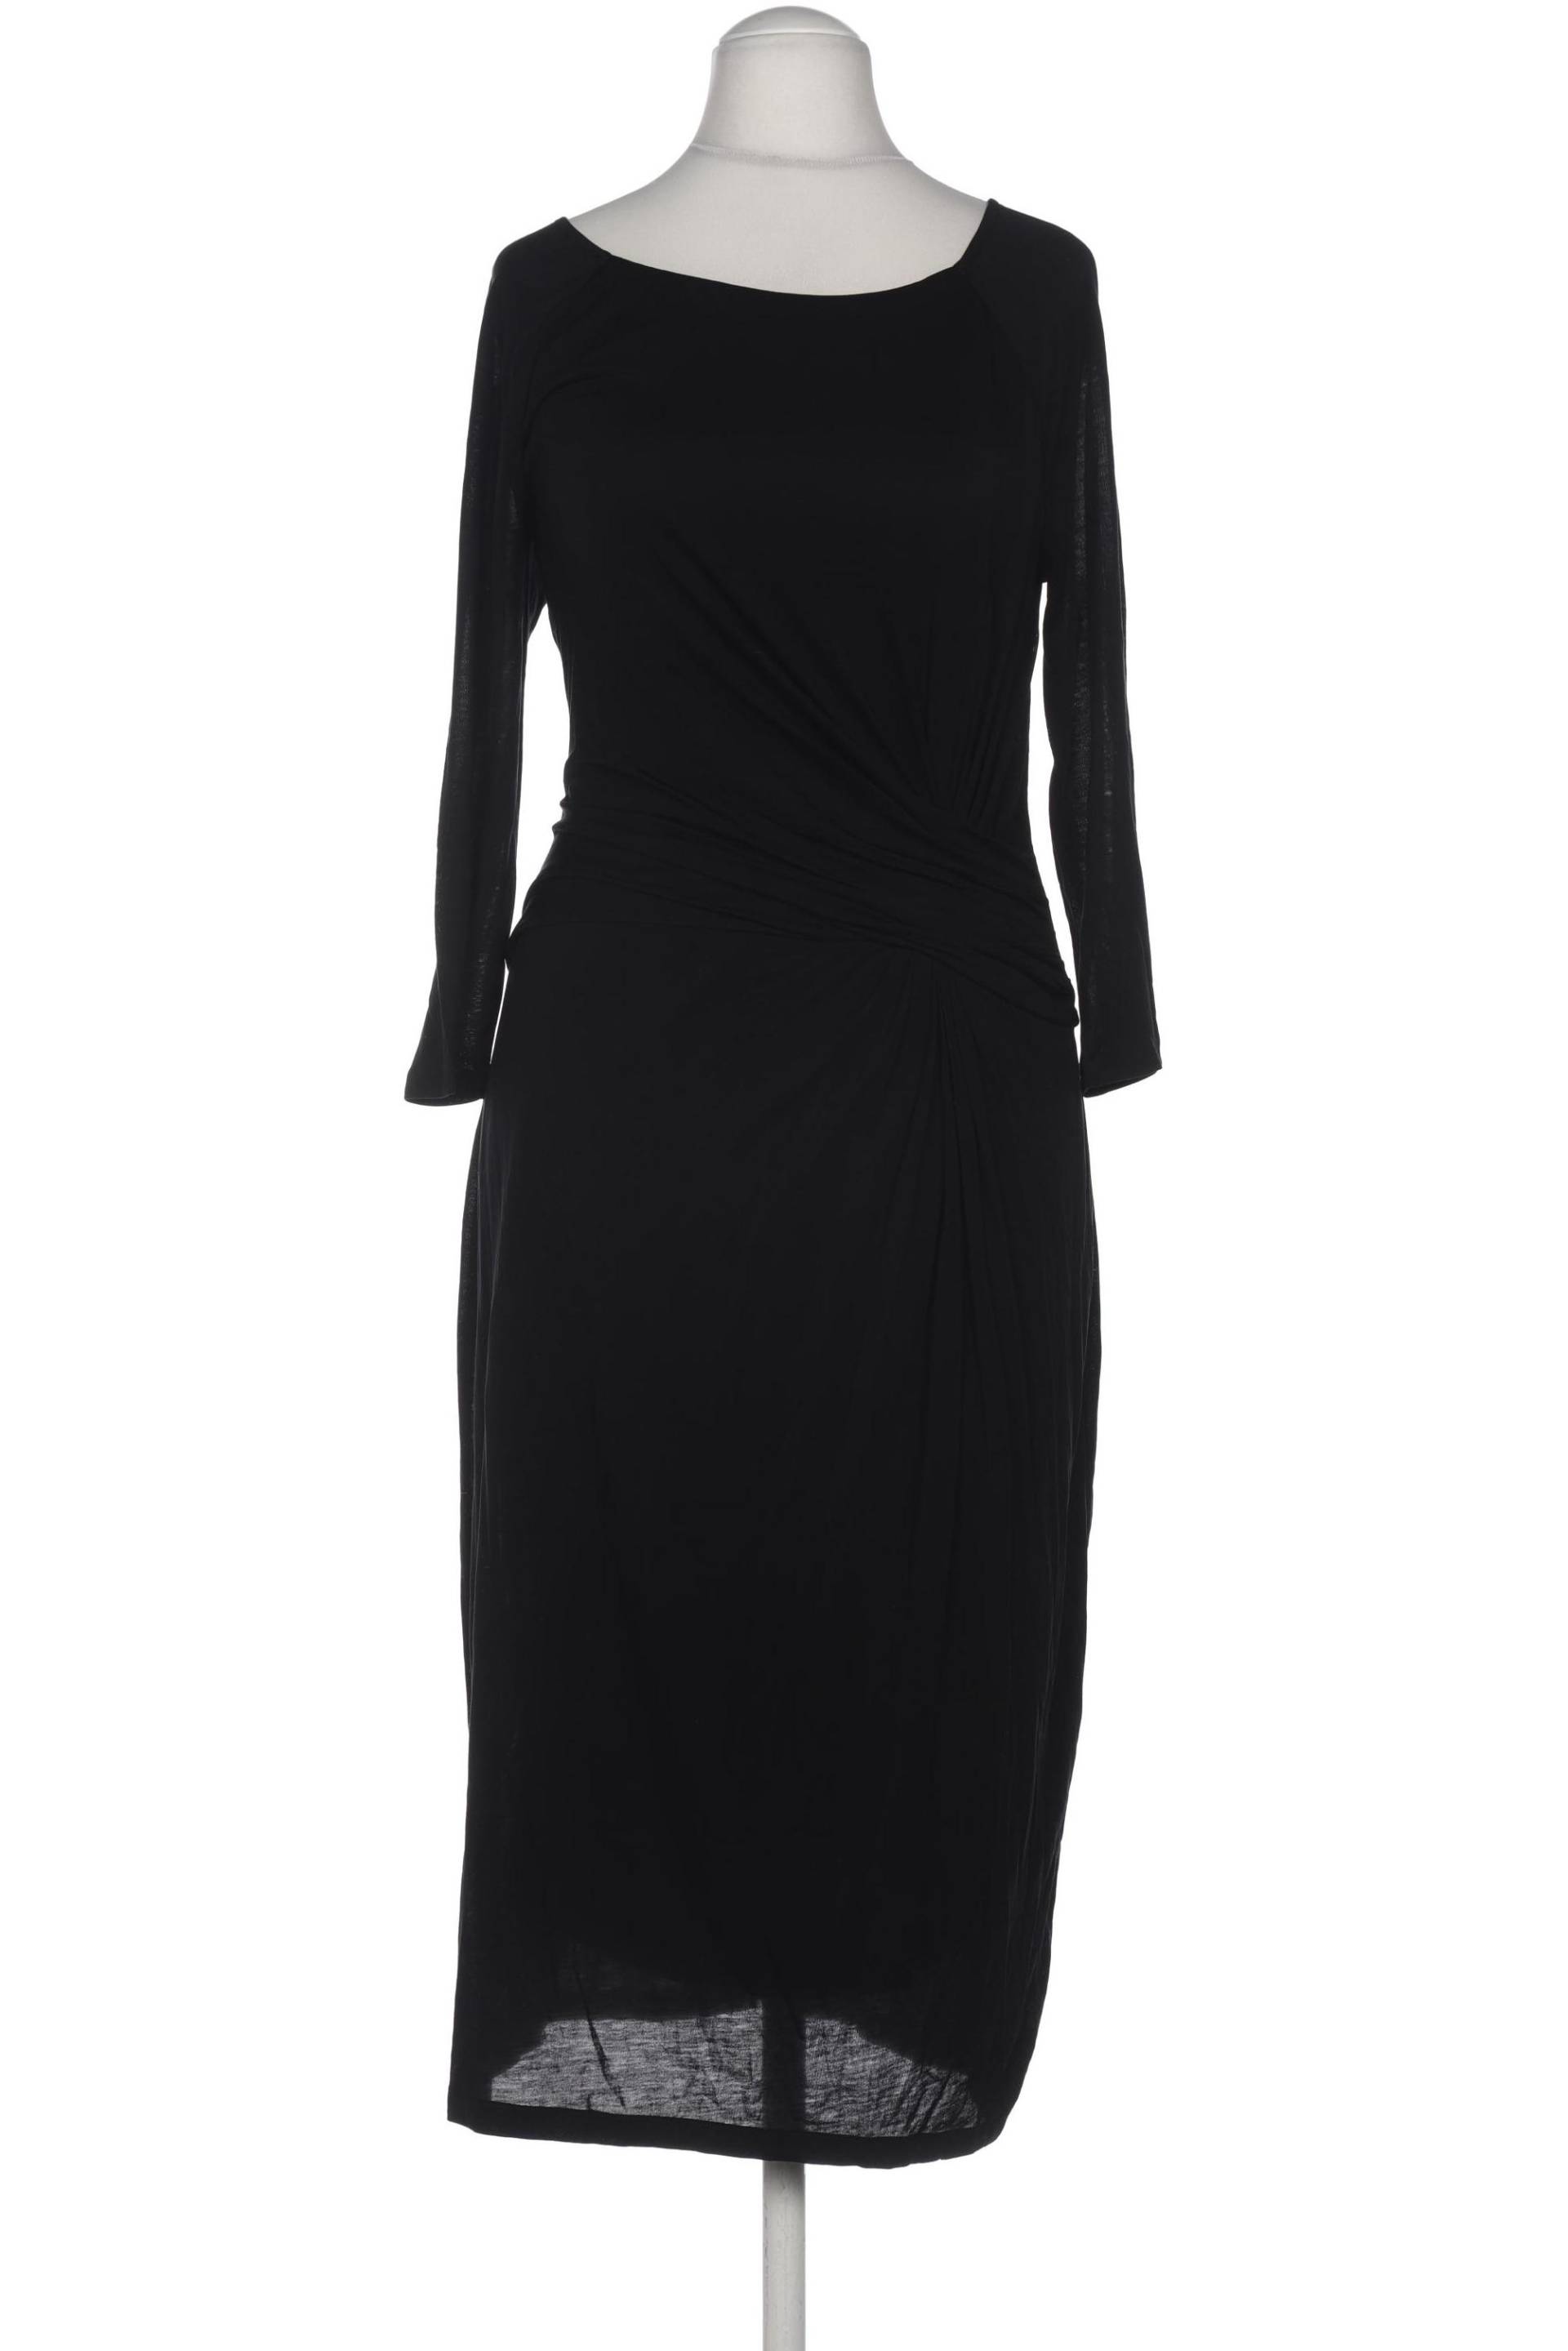 Boden Damen Kleid, schwarz, Gr. 40 von Boden